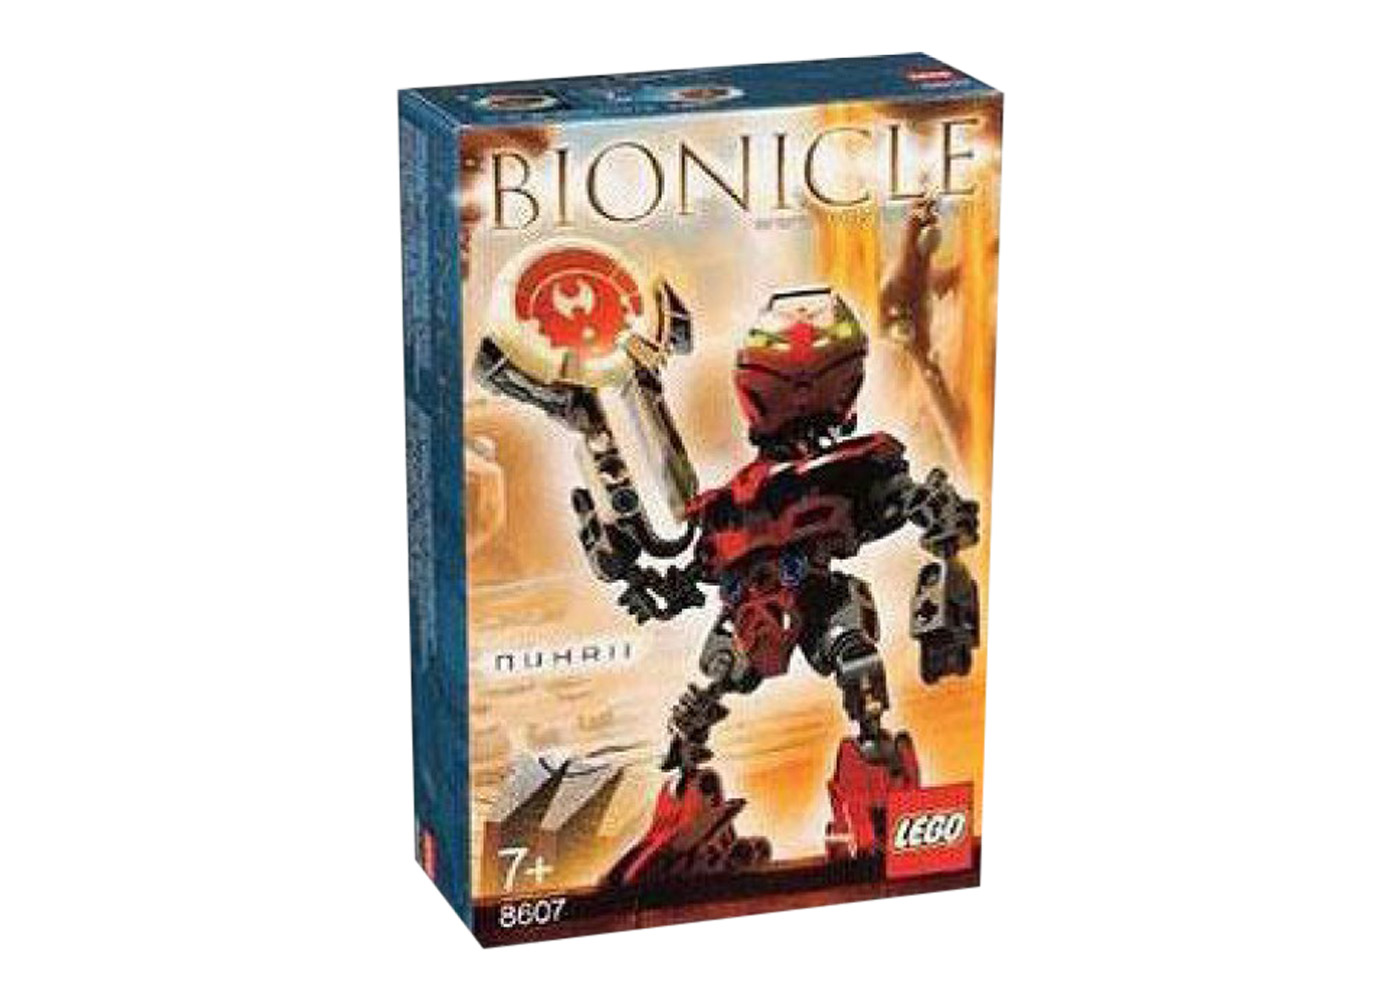 LEGO Bionicle Nuhrii Set 8607 - US